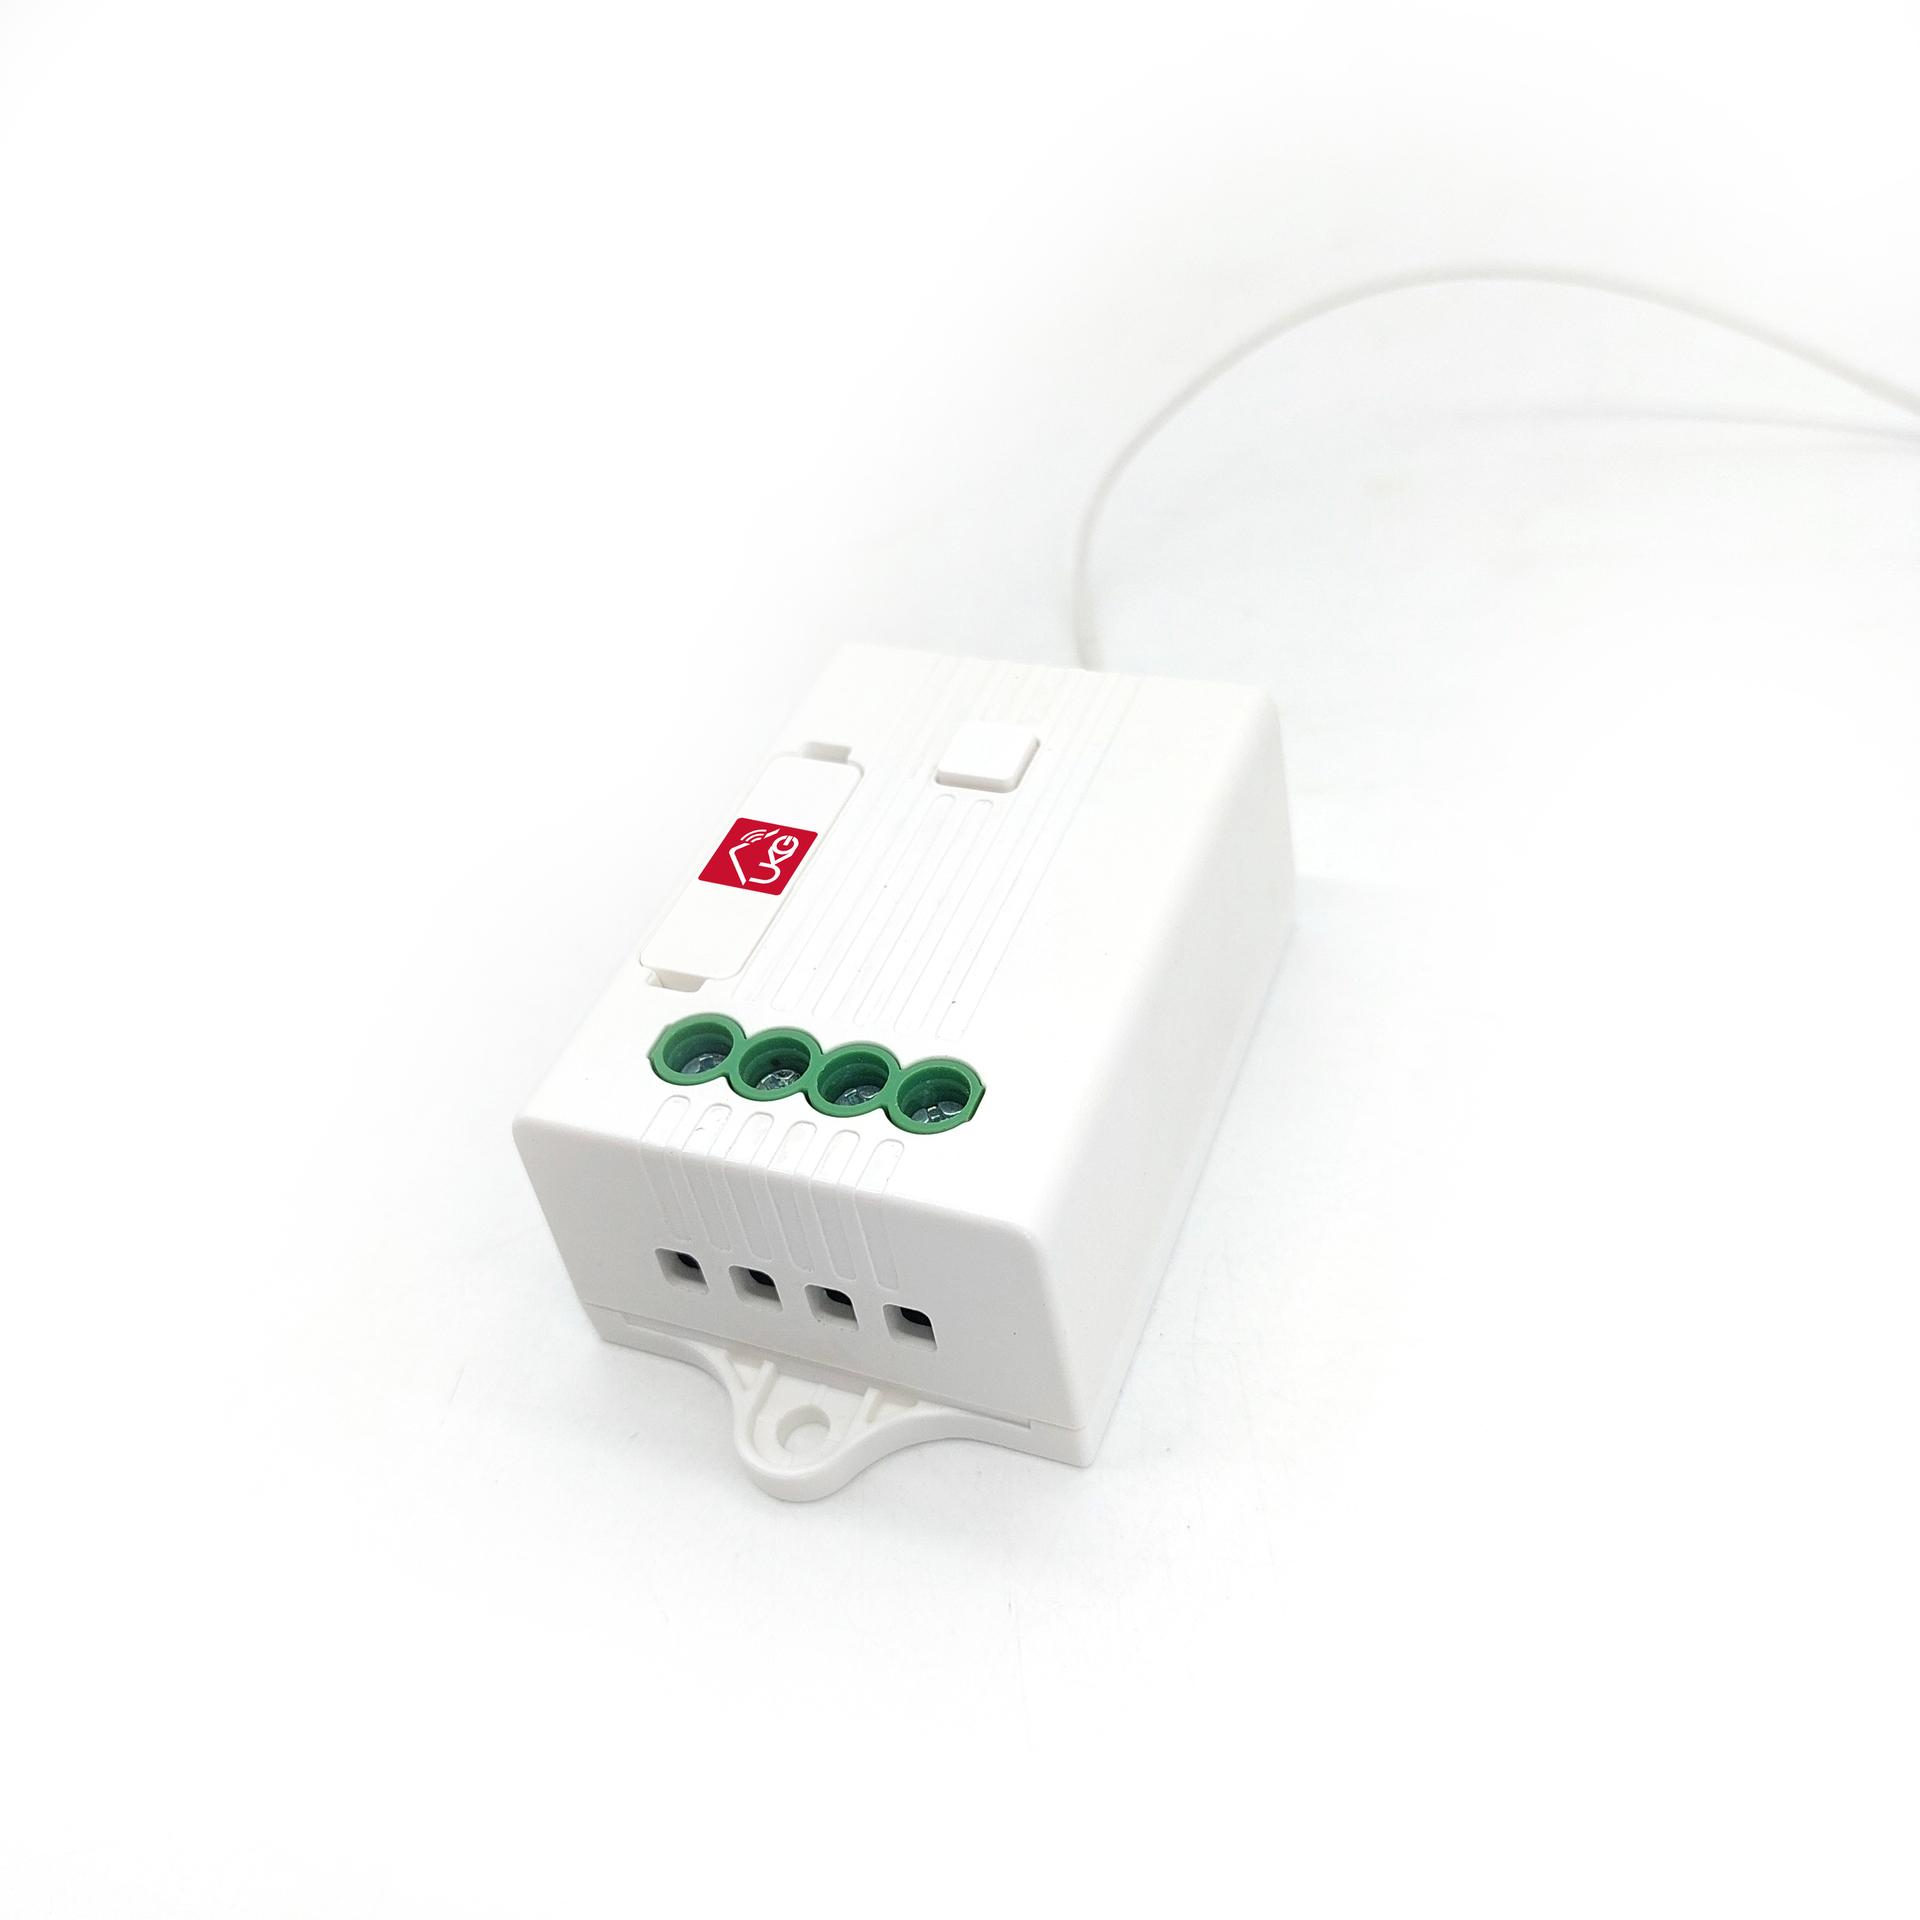 KinSwitch 1-路動能ZigBee接收智能控制器-5A，分體式電源燈制開關直接安裝在燈電的源頭透過無線接收訊號開關電流多達配對10個ZigBee開關改裝雙控多控無須拉線首選特價(U-ERC314)